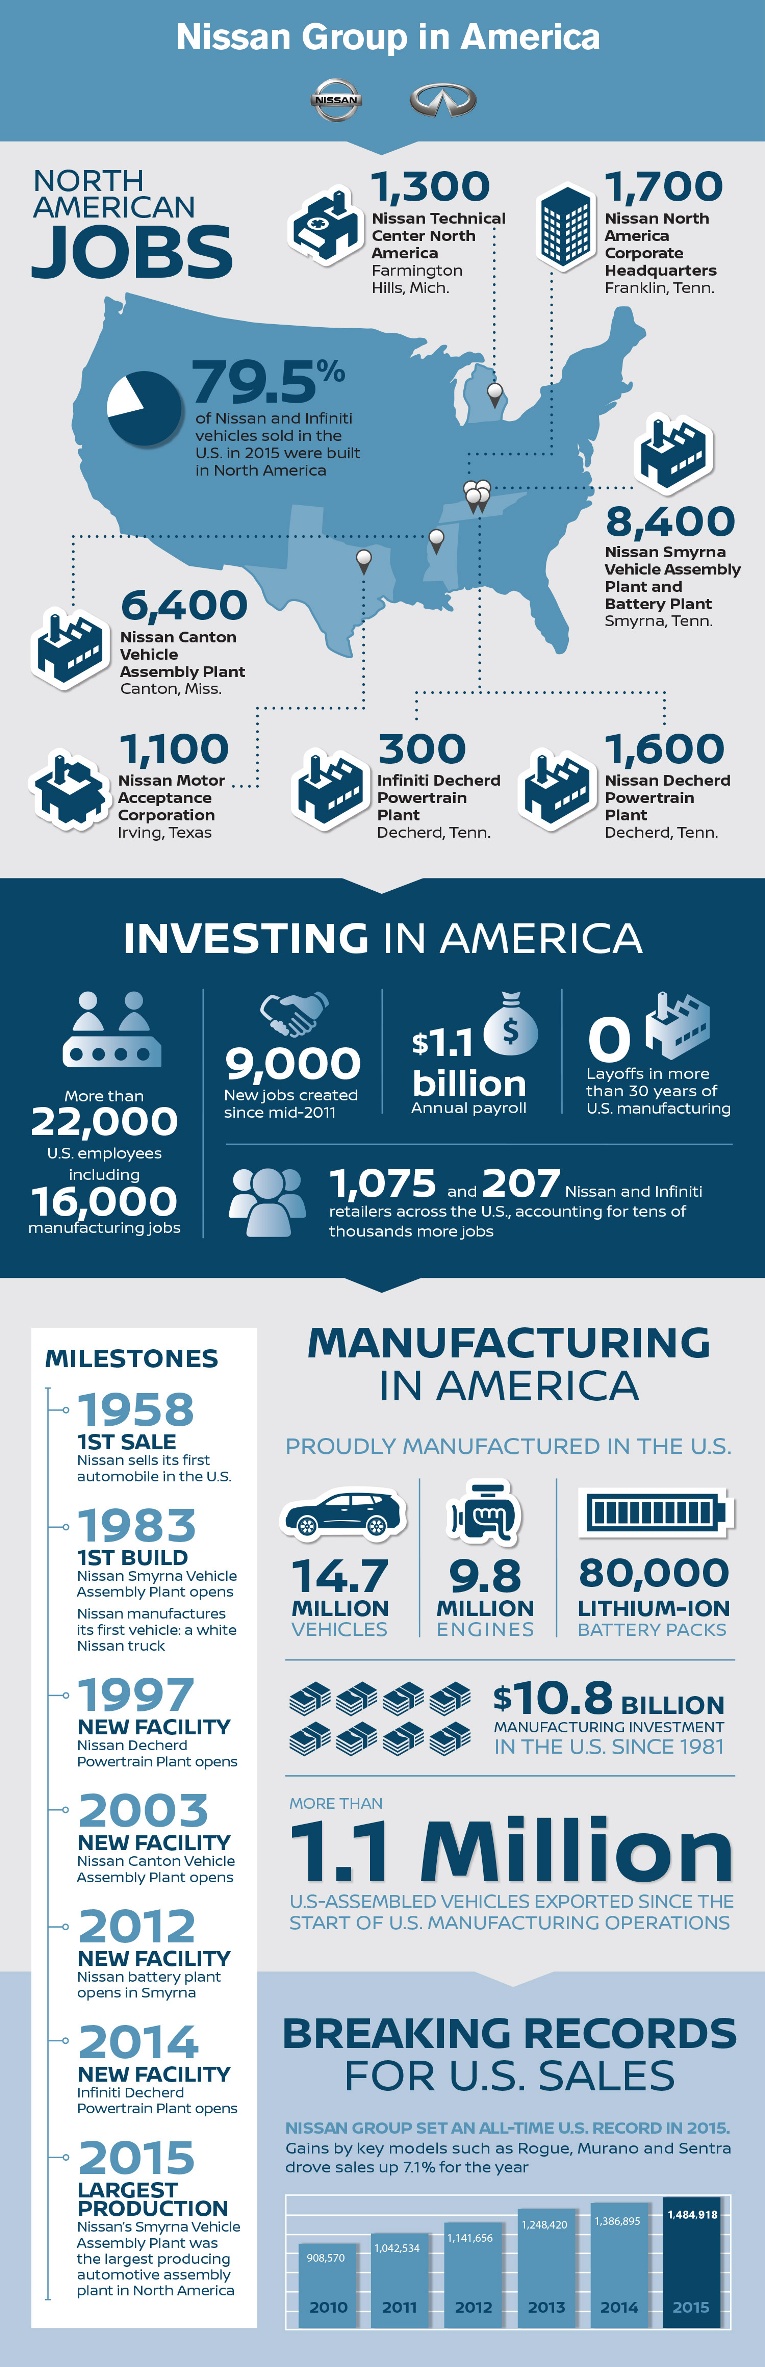 Nissan north america - u.s. manufacturing